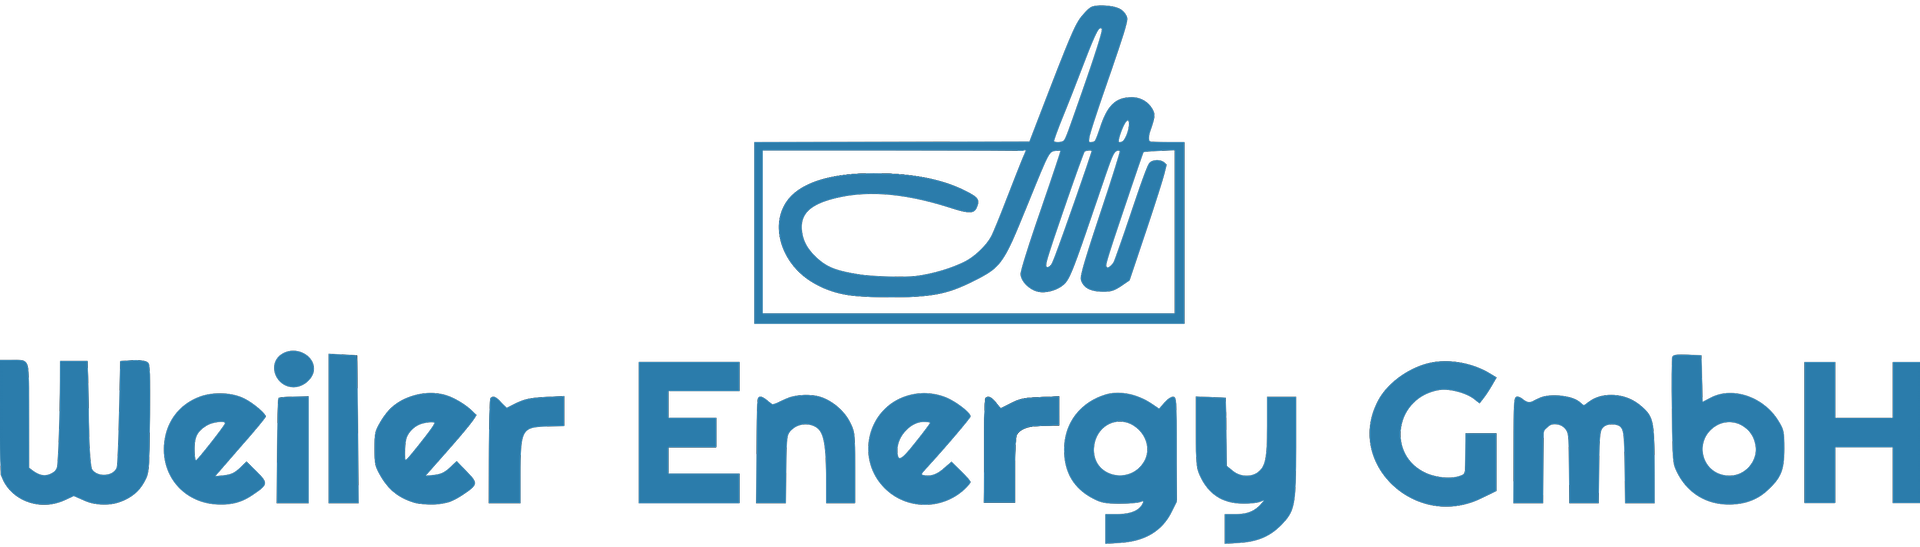 Weiler Energy GmbH